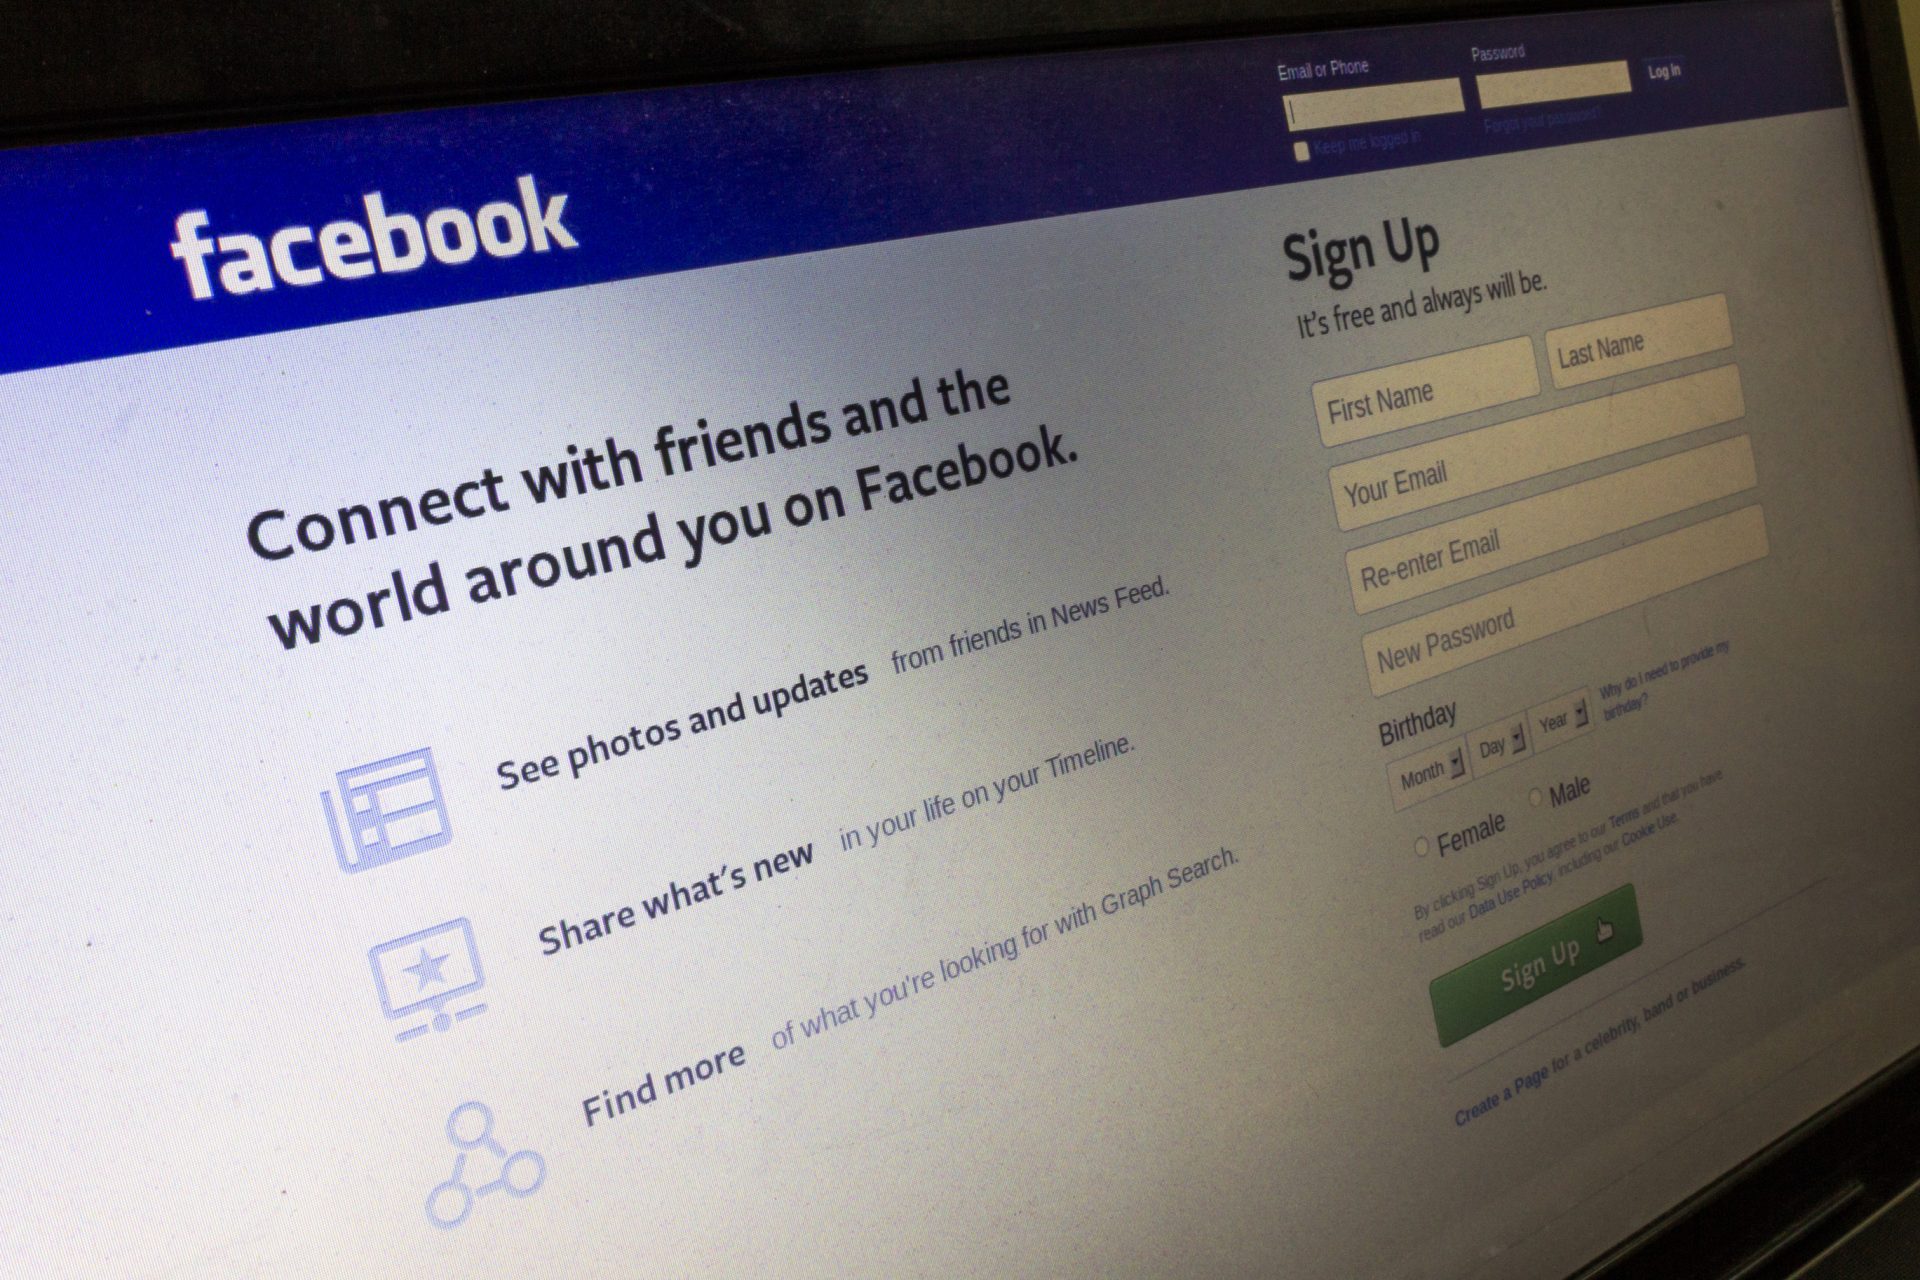 Banco de Portugal alerta para perfis de Facebook fraudulentos.